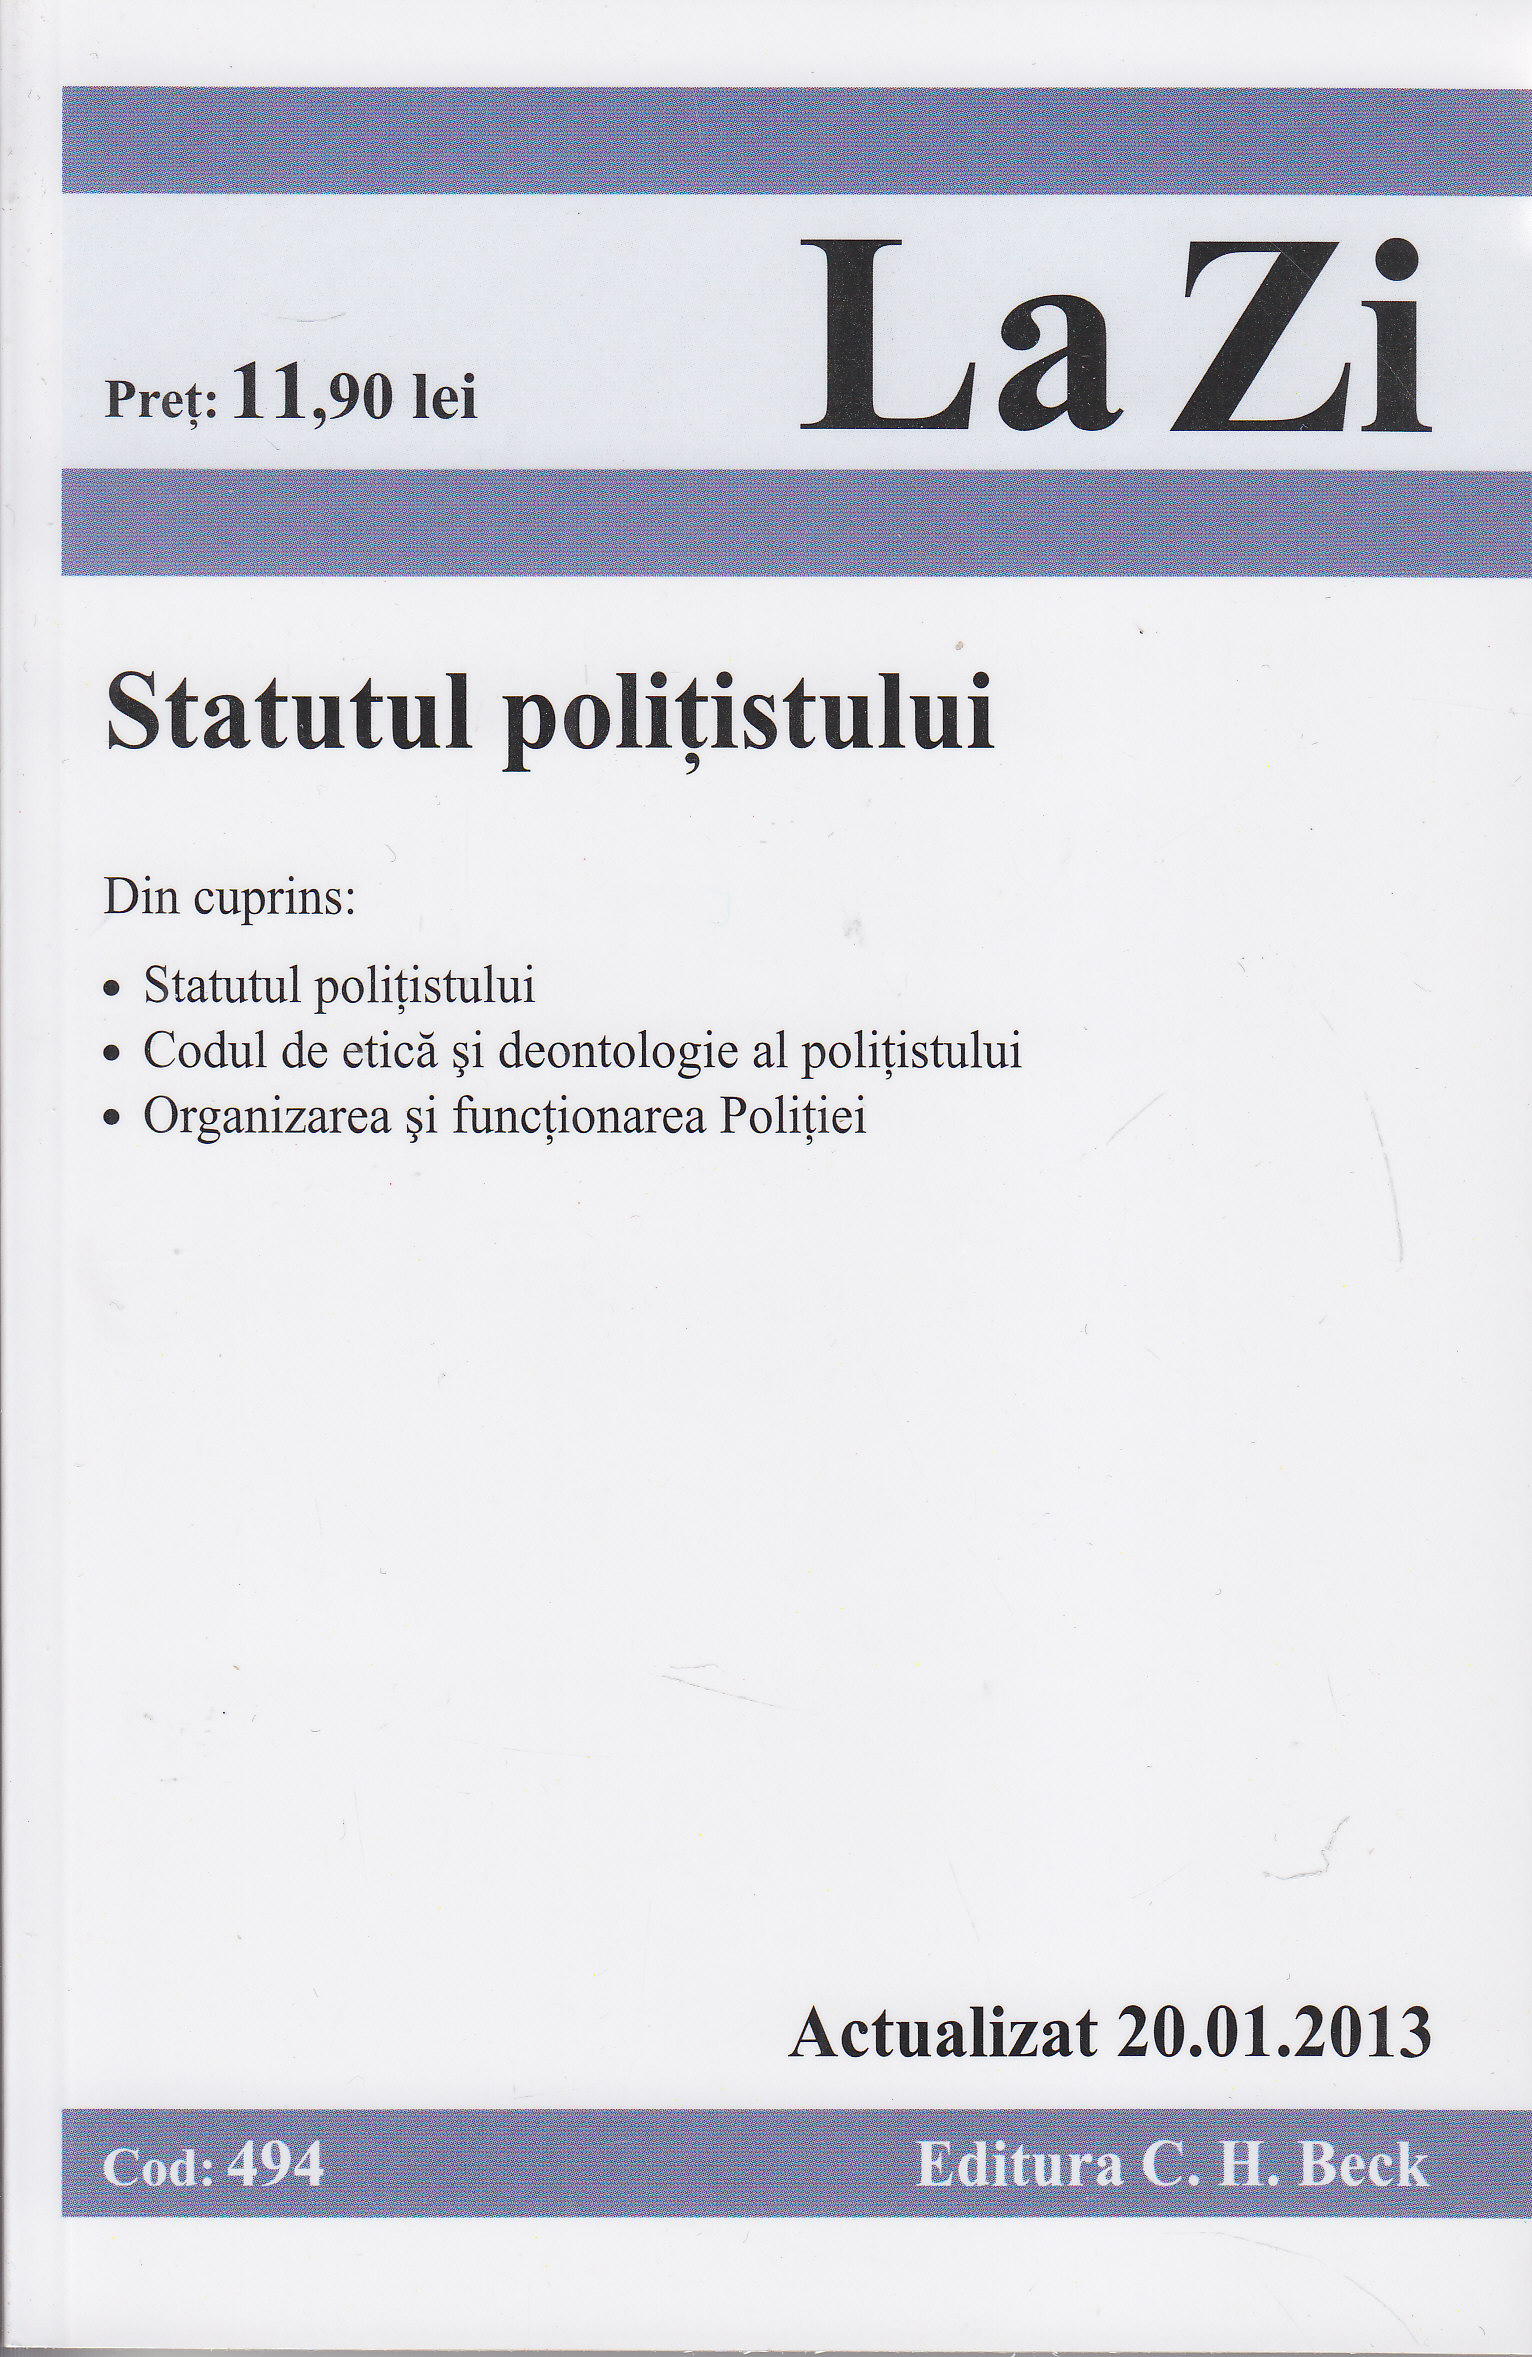 Statutul politistului act. 20.01.2013